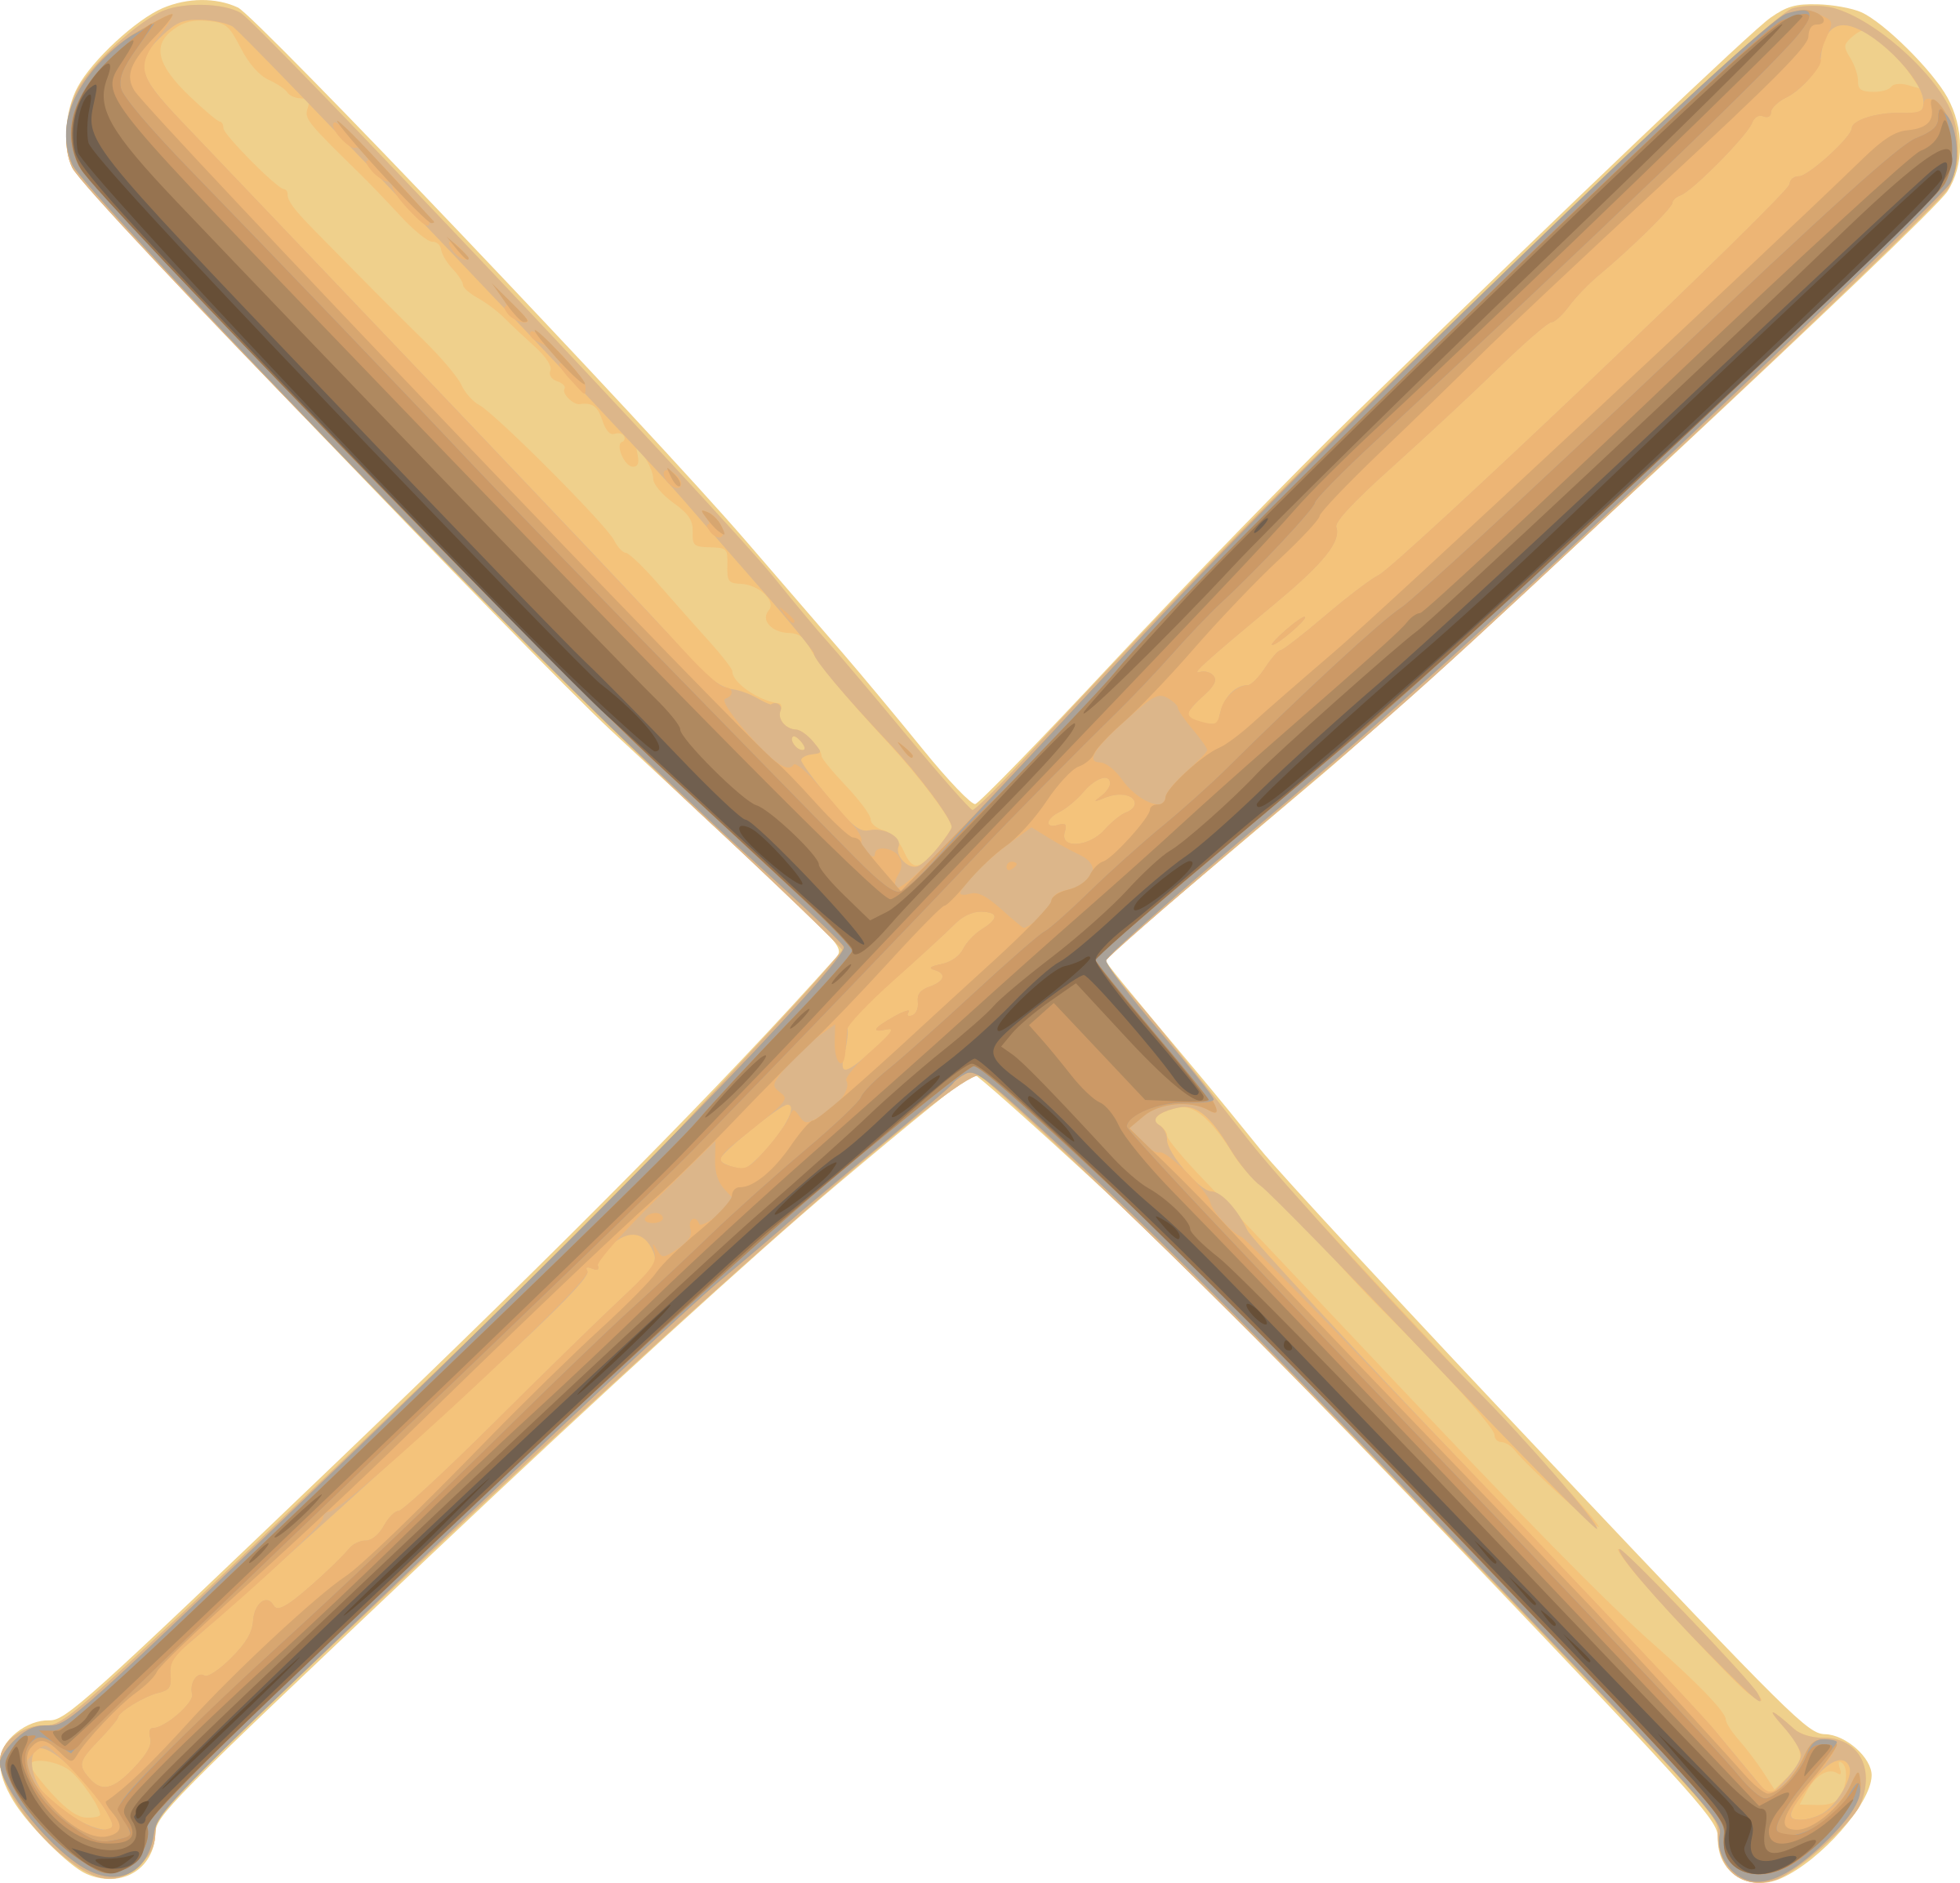 Baseball Bat PNG Image